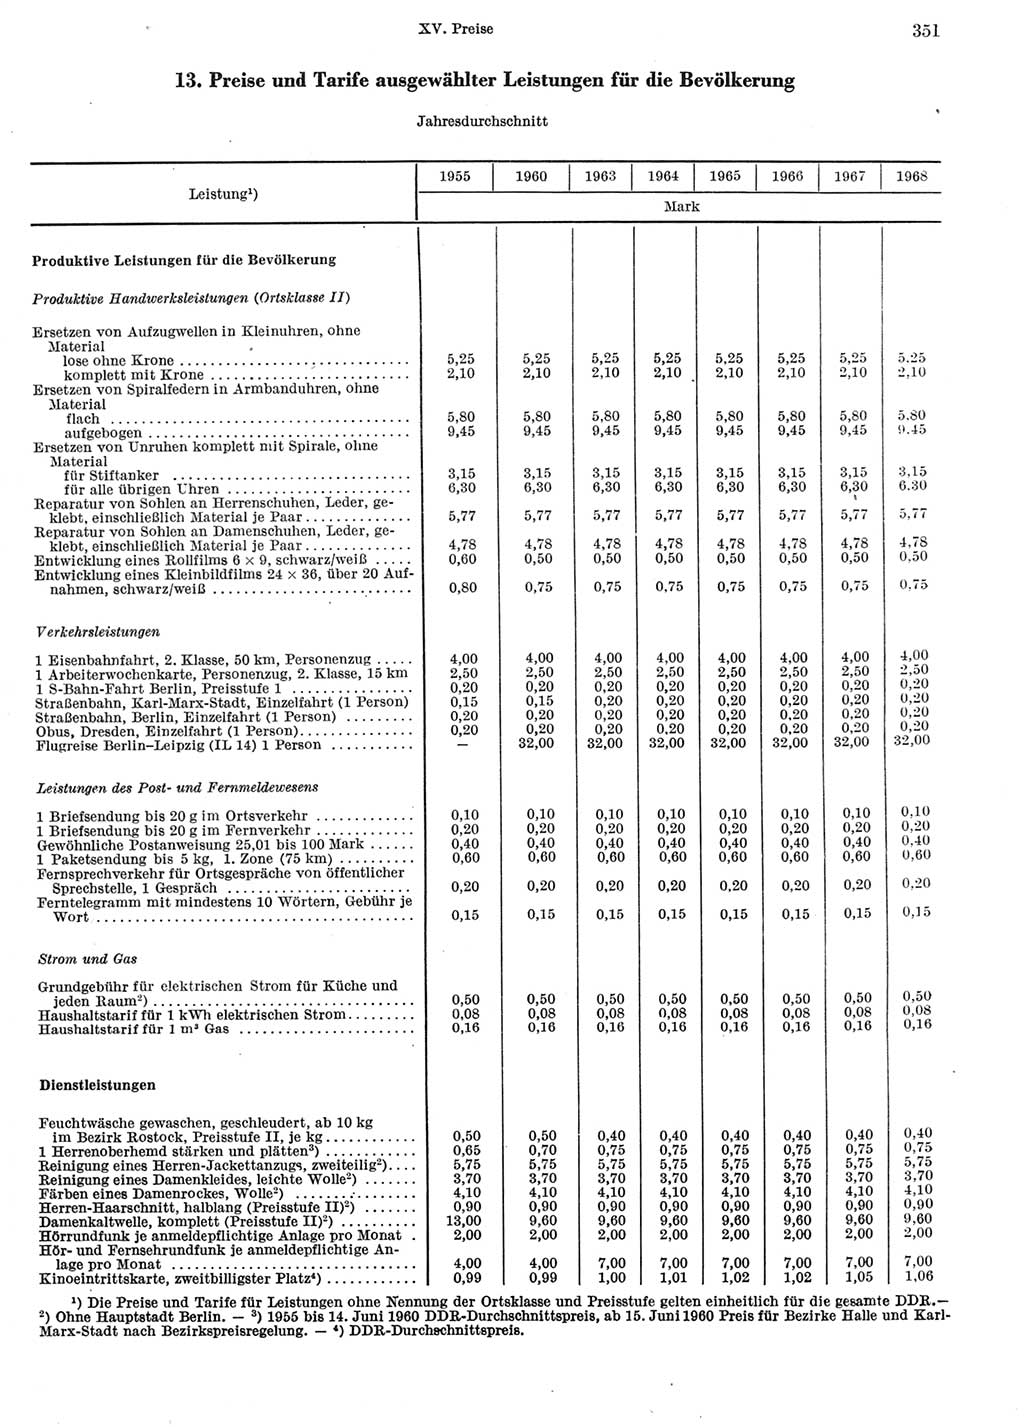 Statistisches Jahrbuch der Deutschen Demokratischen Republik (DDR) 1969, Seite 351 (Stat. Jb. DDR 1969, S. 351)